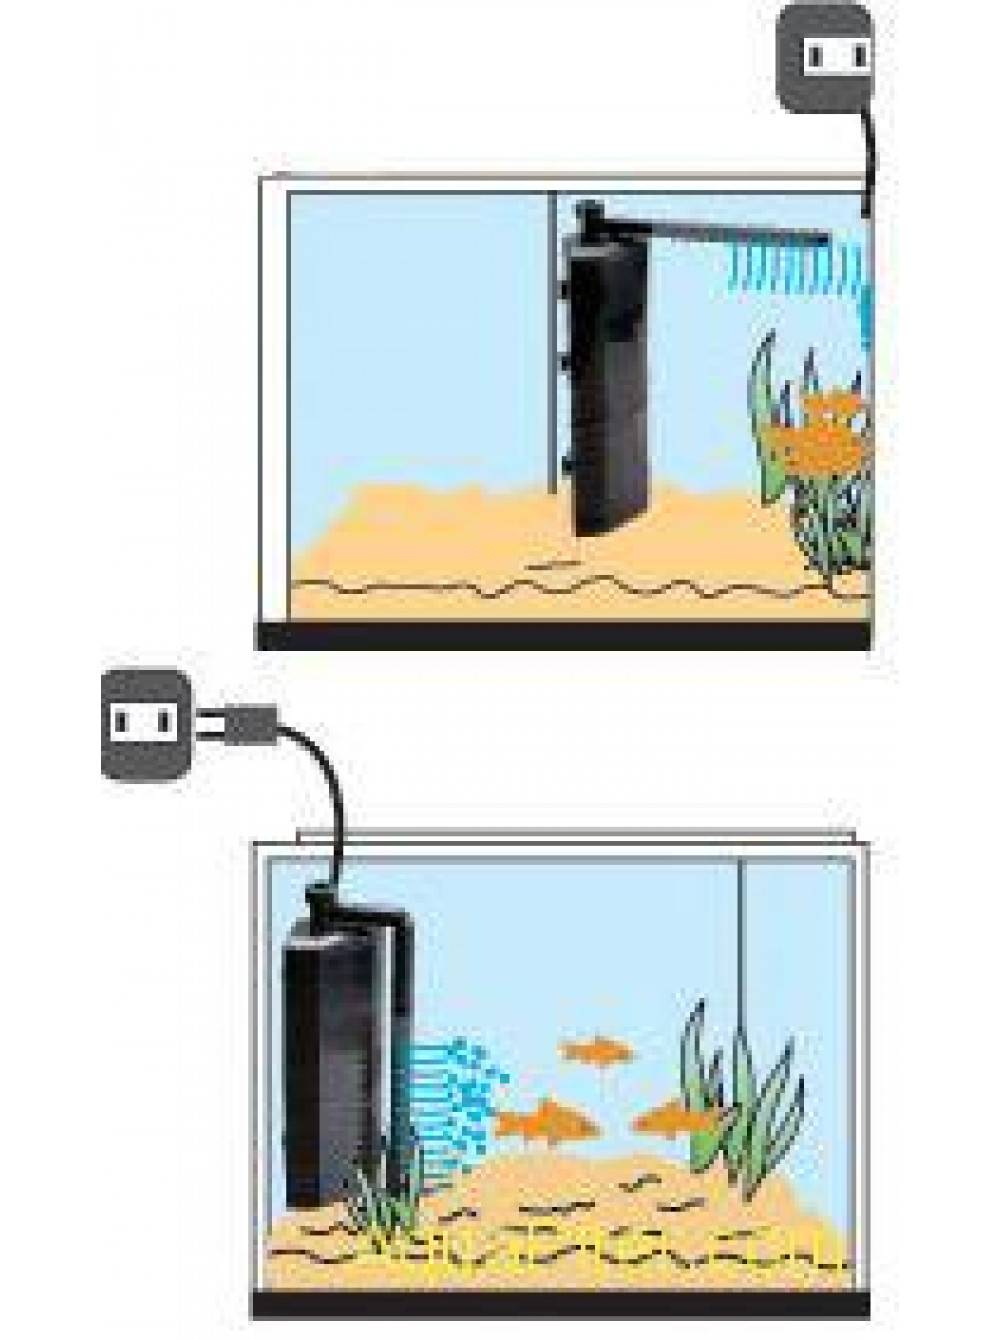 Запуск аквариума в первый раз: пошаговая инструкция, установка фильтра, подготовка аквариума к заселению рыбками и началу эксплуатации